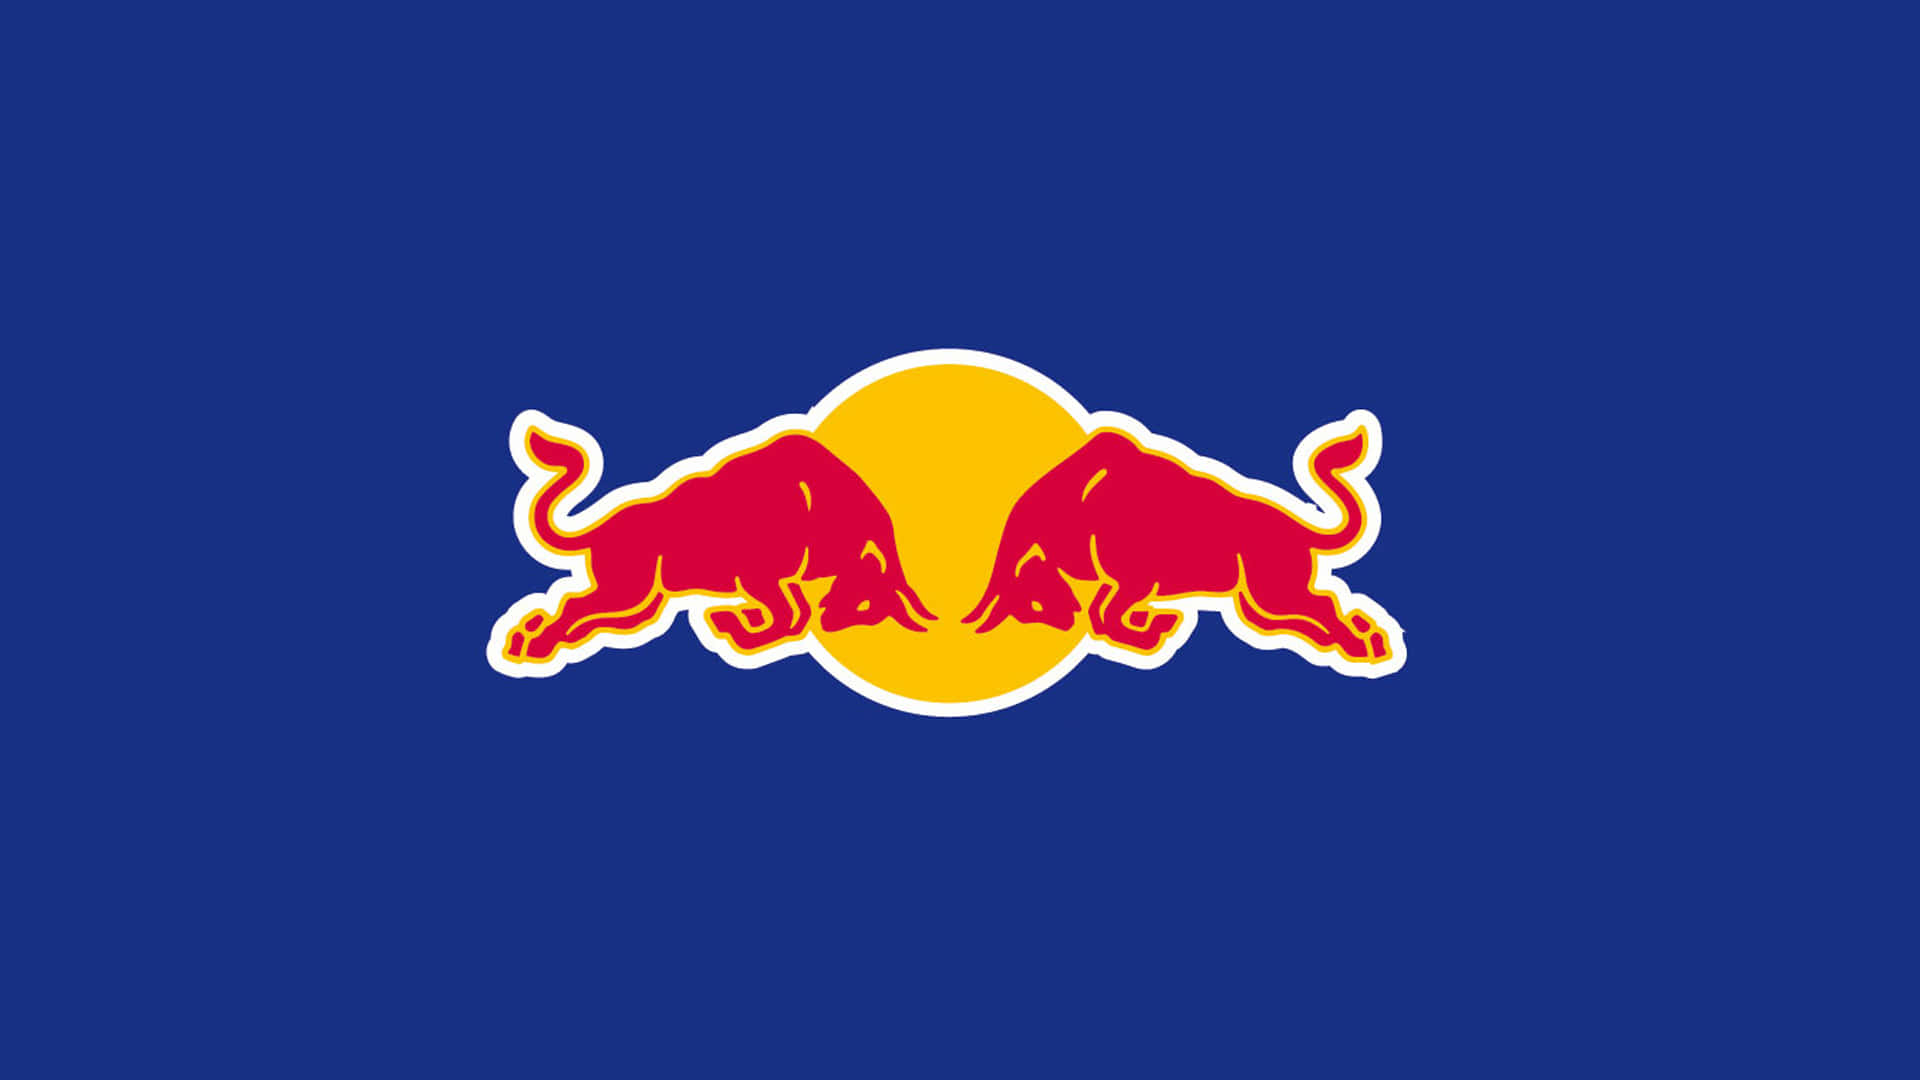 Fåny Energi Med Red Bull.